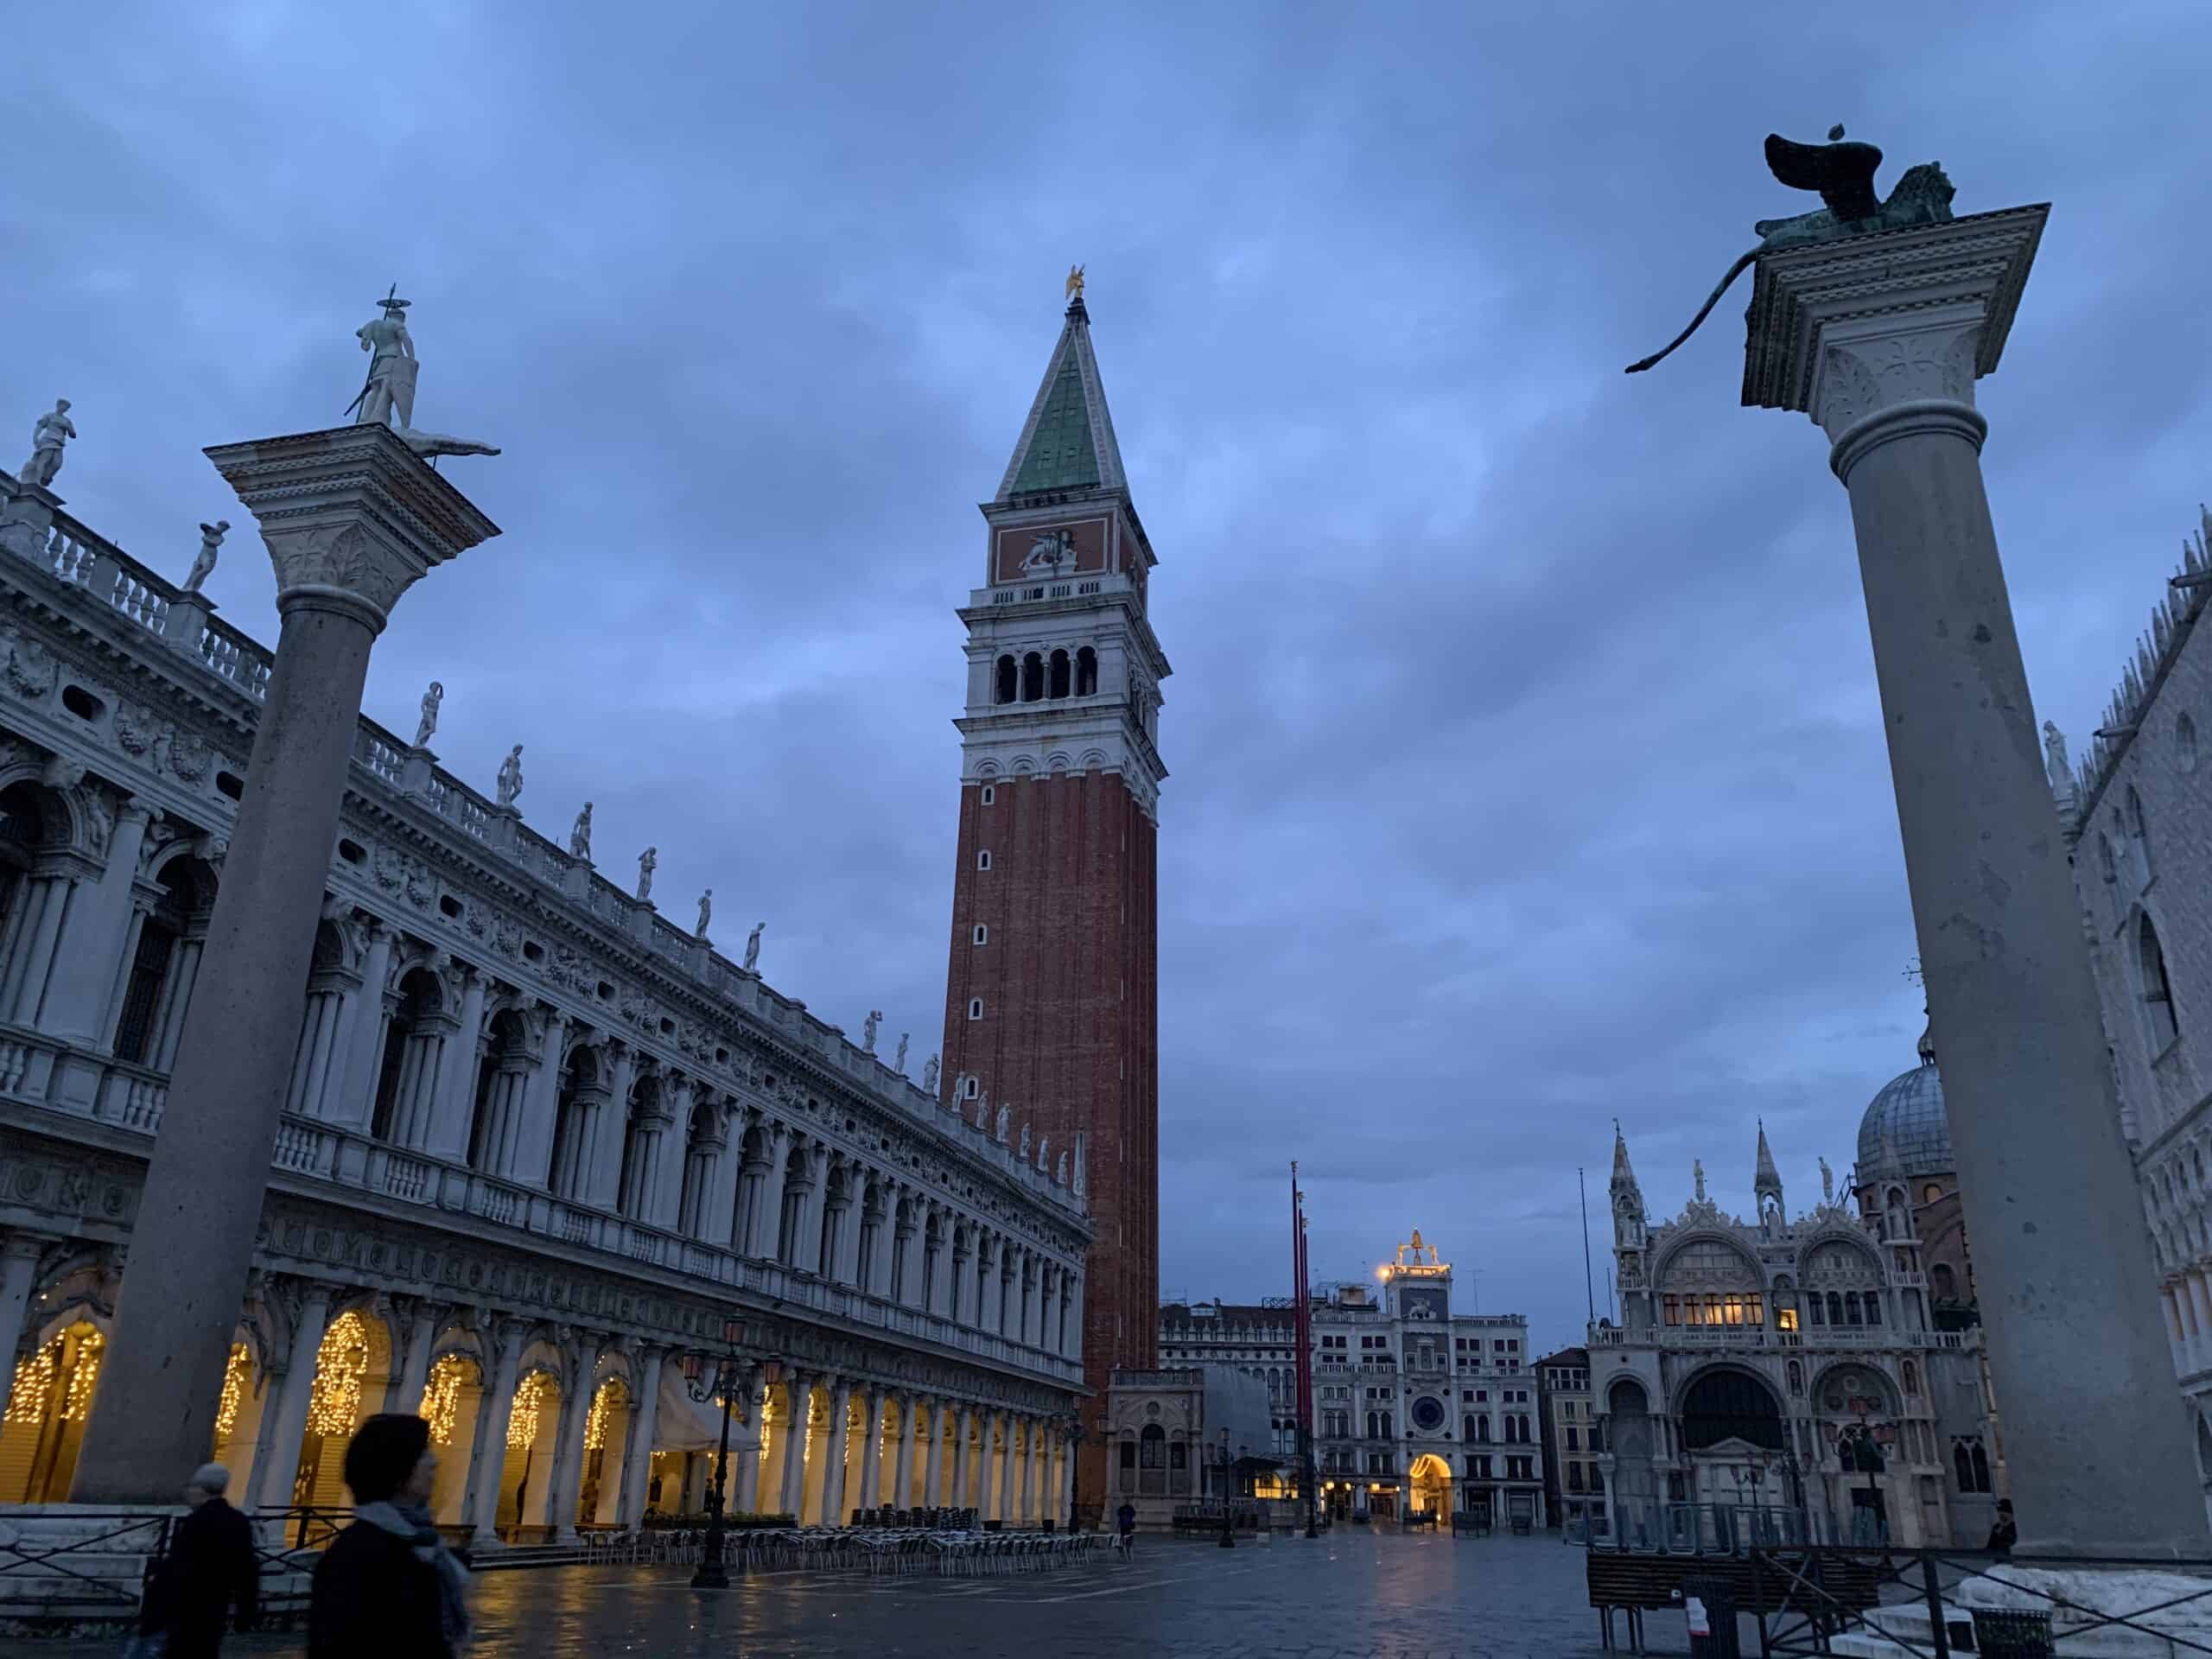 St. Mark’s Square – Venice